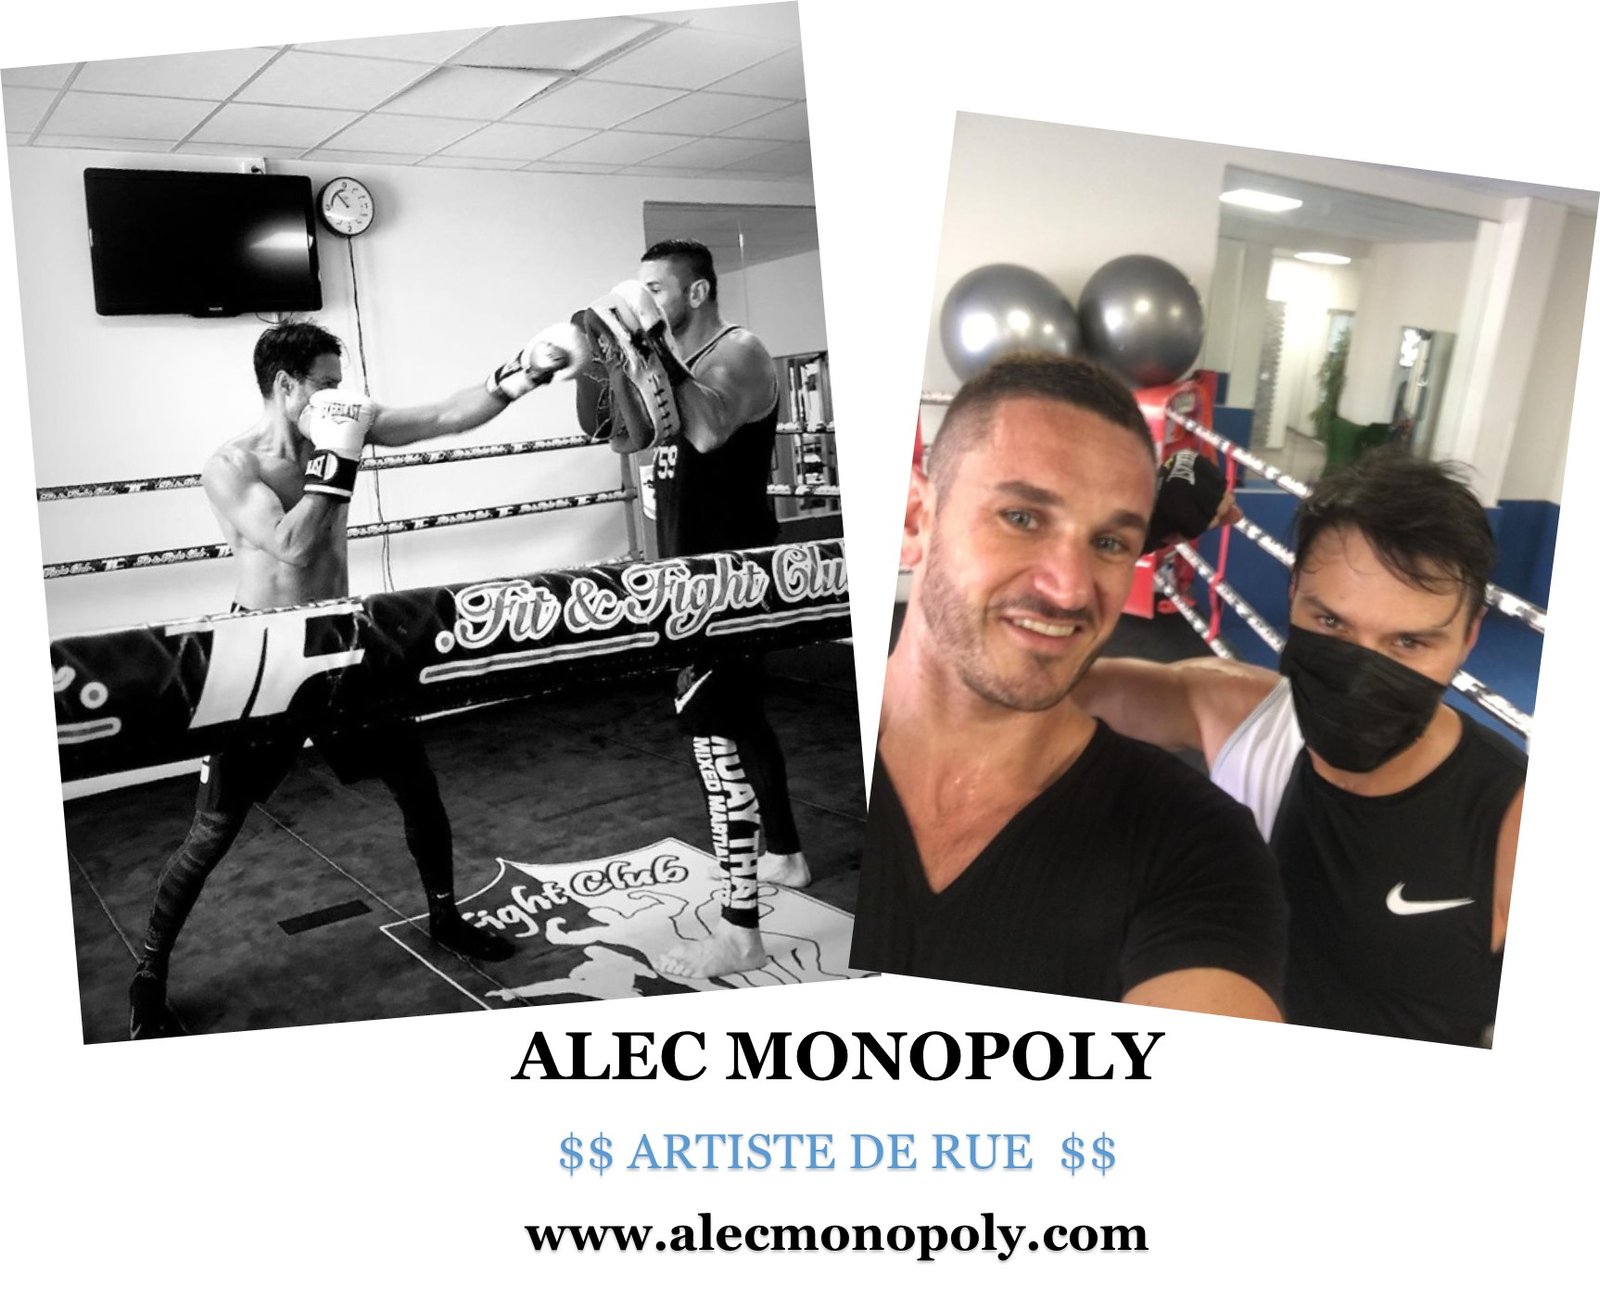 ALEC MONOPOLY